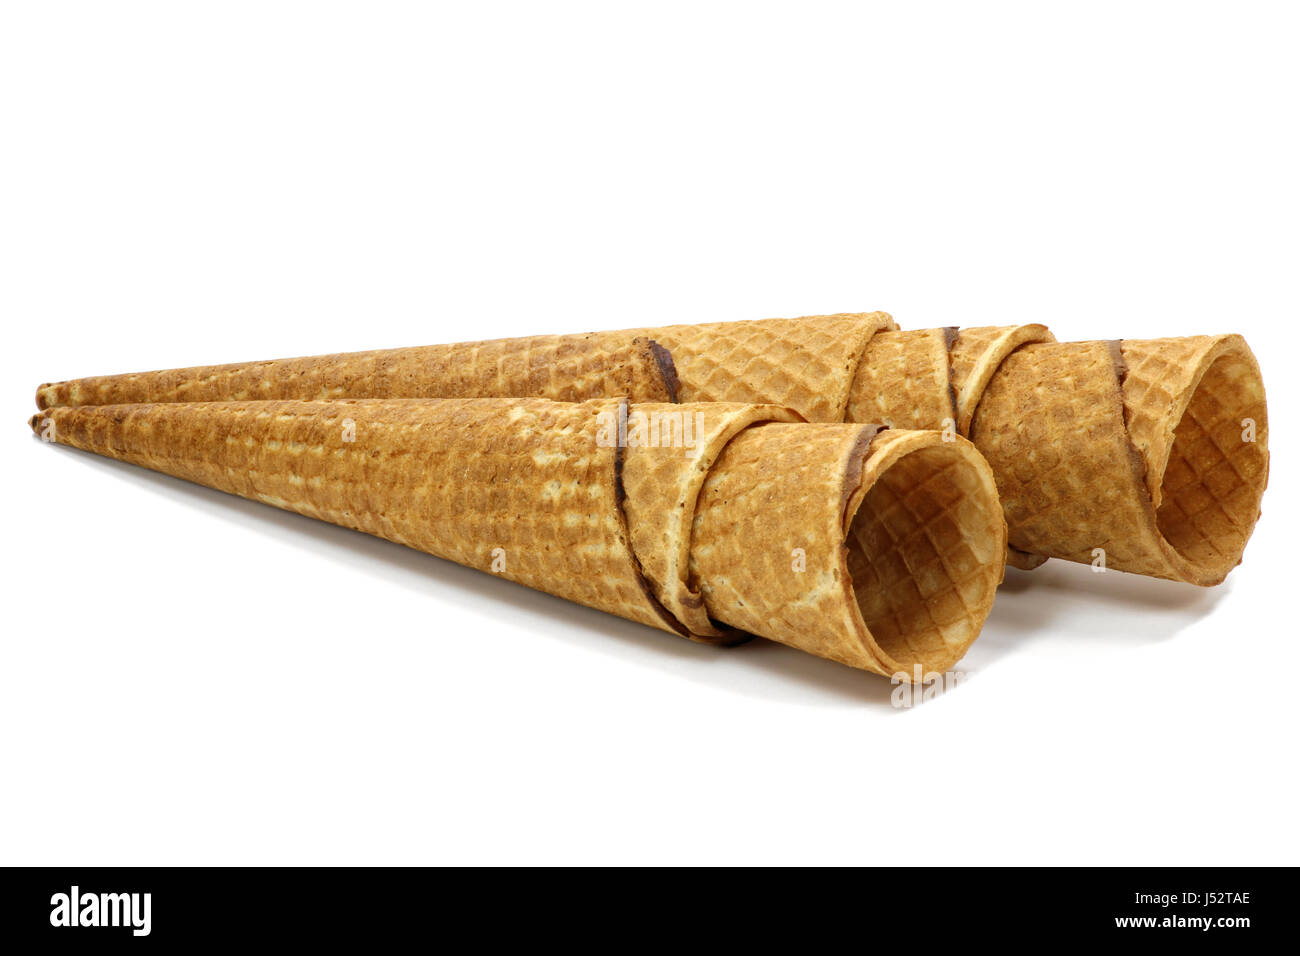 ice cream cones isolated on white background Stock Photo